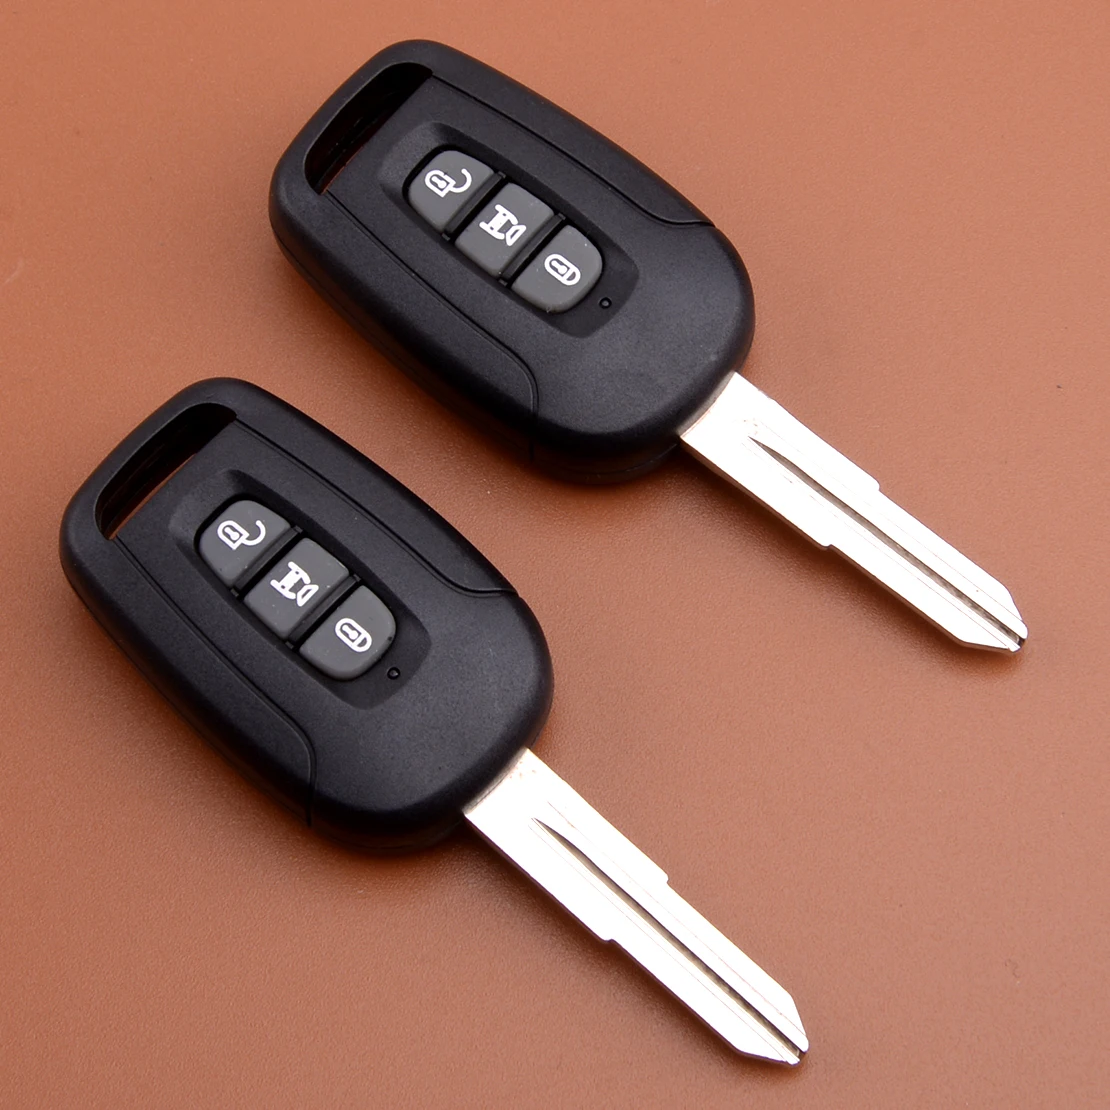 

2 шт. Автомобильный Брелок дистанционного управления с ключом 3 кнопки 433 МГц ID46 чип, пригодный для Chevrolet Captiva 2013 2012 2011 2010 2009 2008